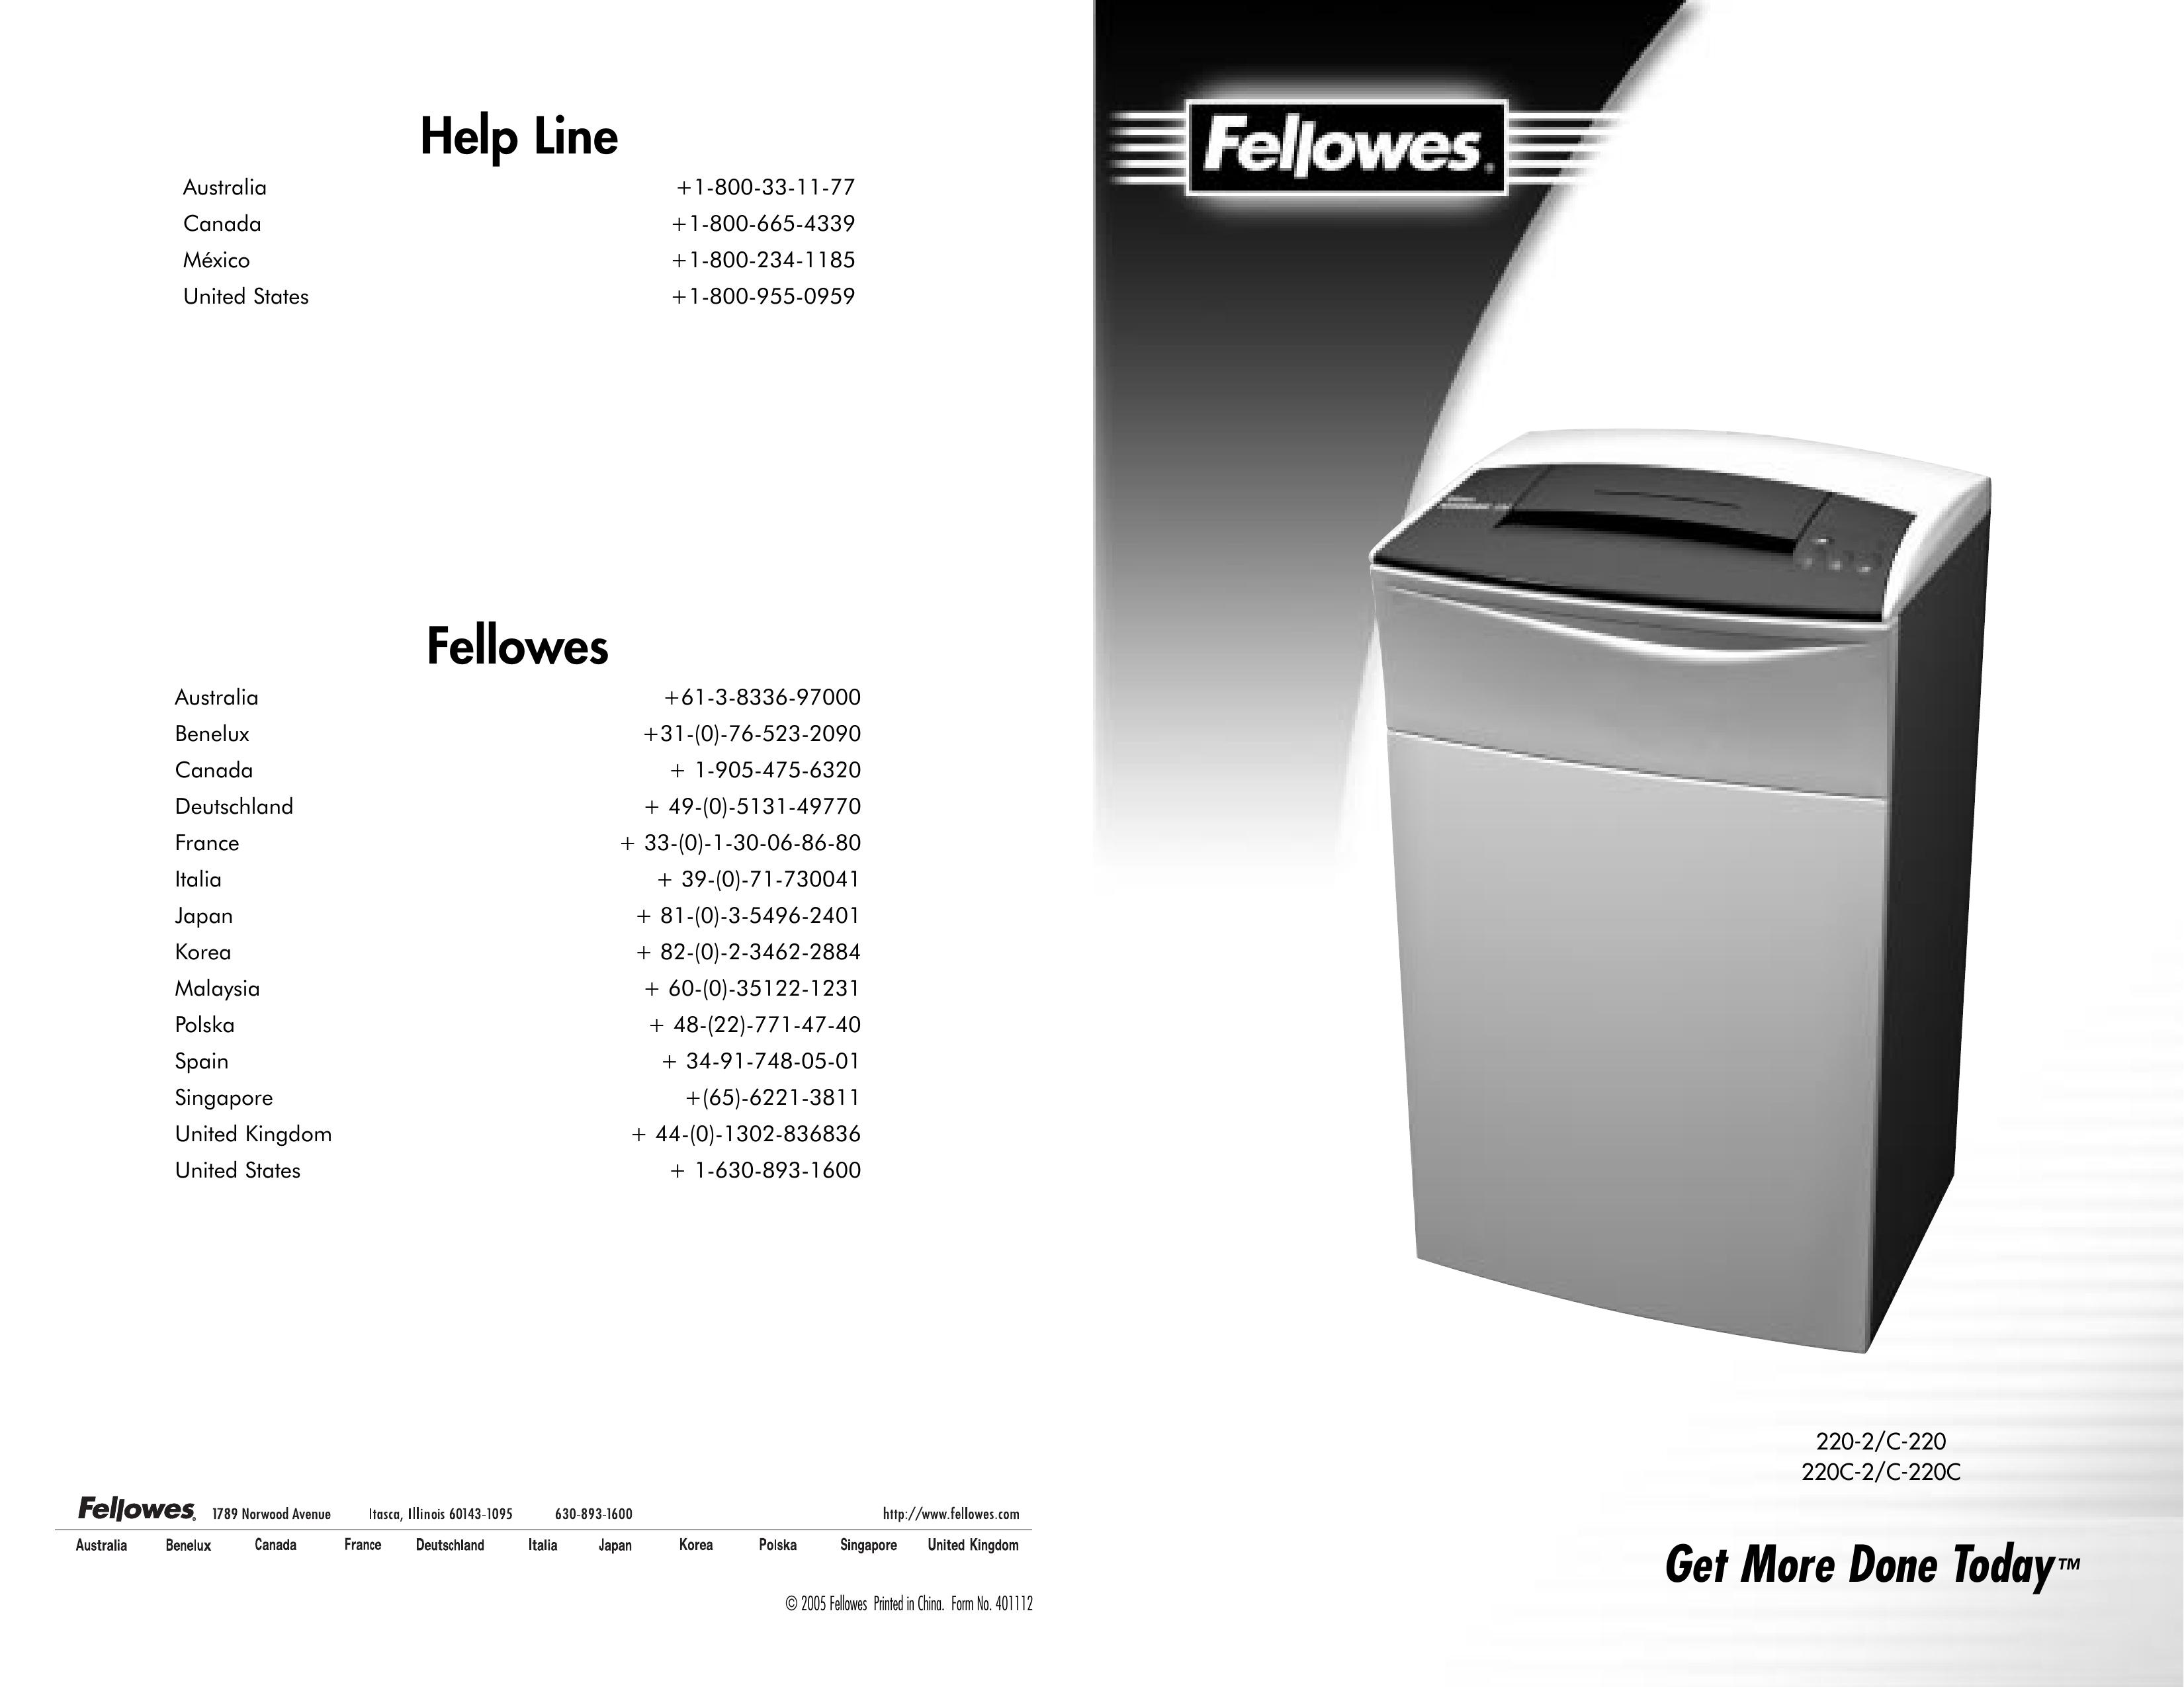 Fellowes 220-2, C-220, 220c-2,C-220c Chipper User Manual